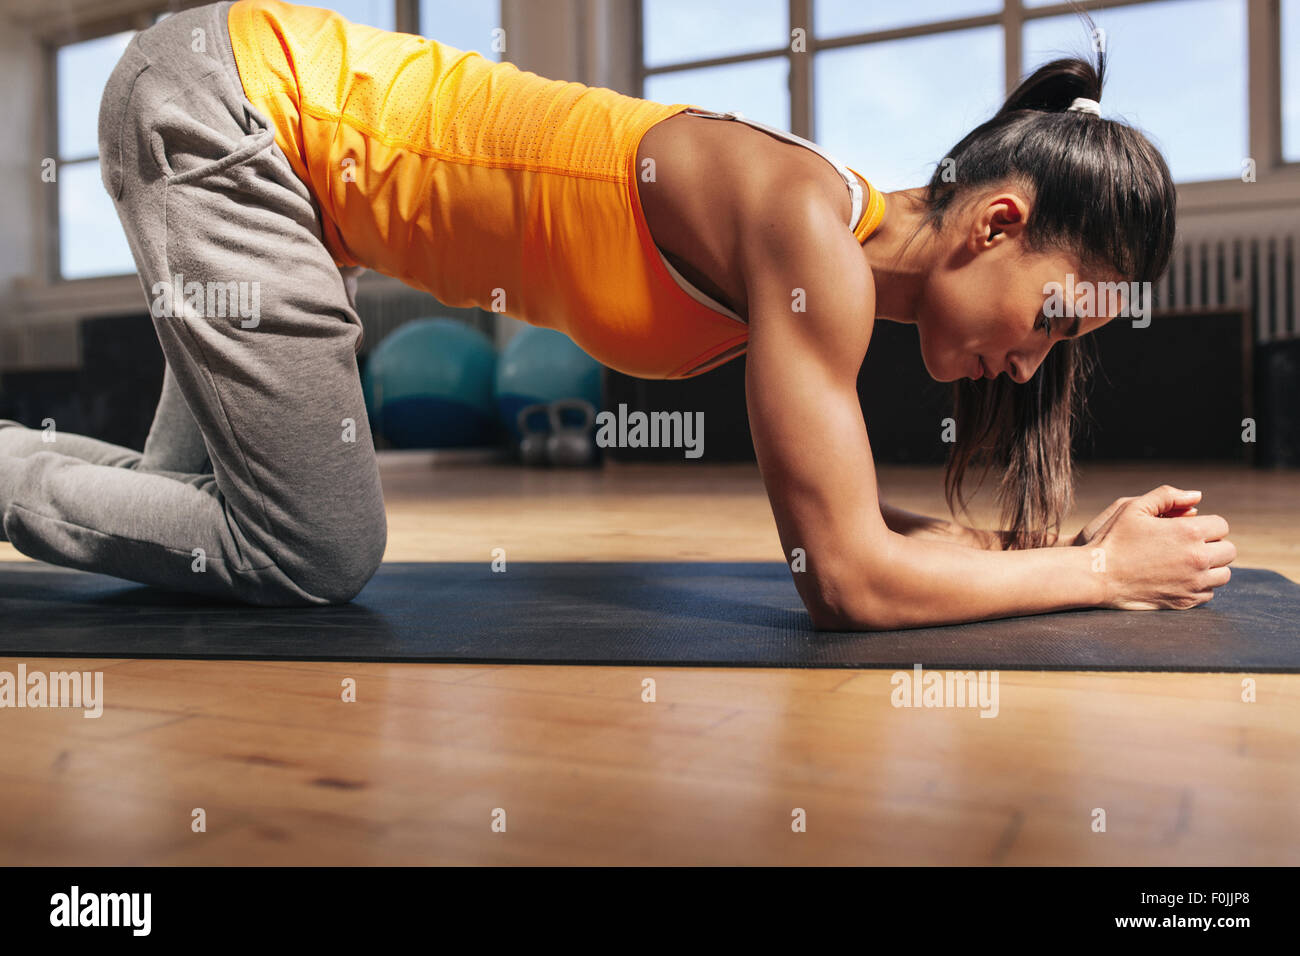 Junge Frau Ausübung auf Fitness-Matte. Starke junge Sportlerin Core Workout im Fitness-Studio zu tun. Stockfoto